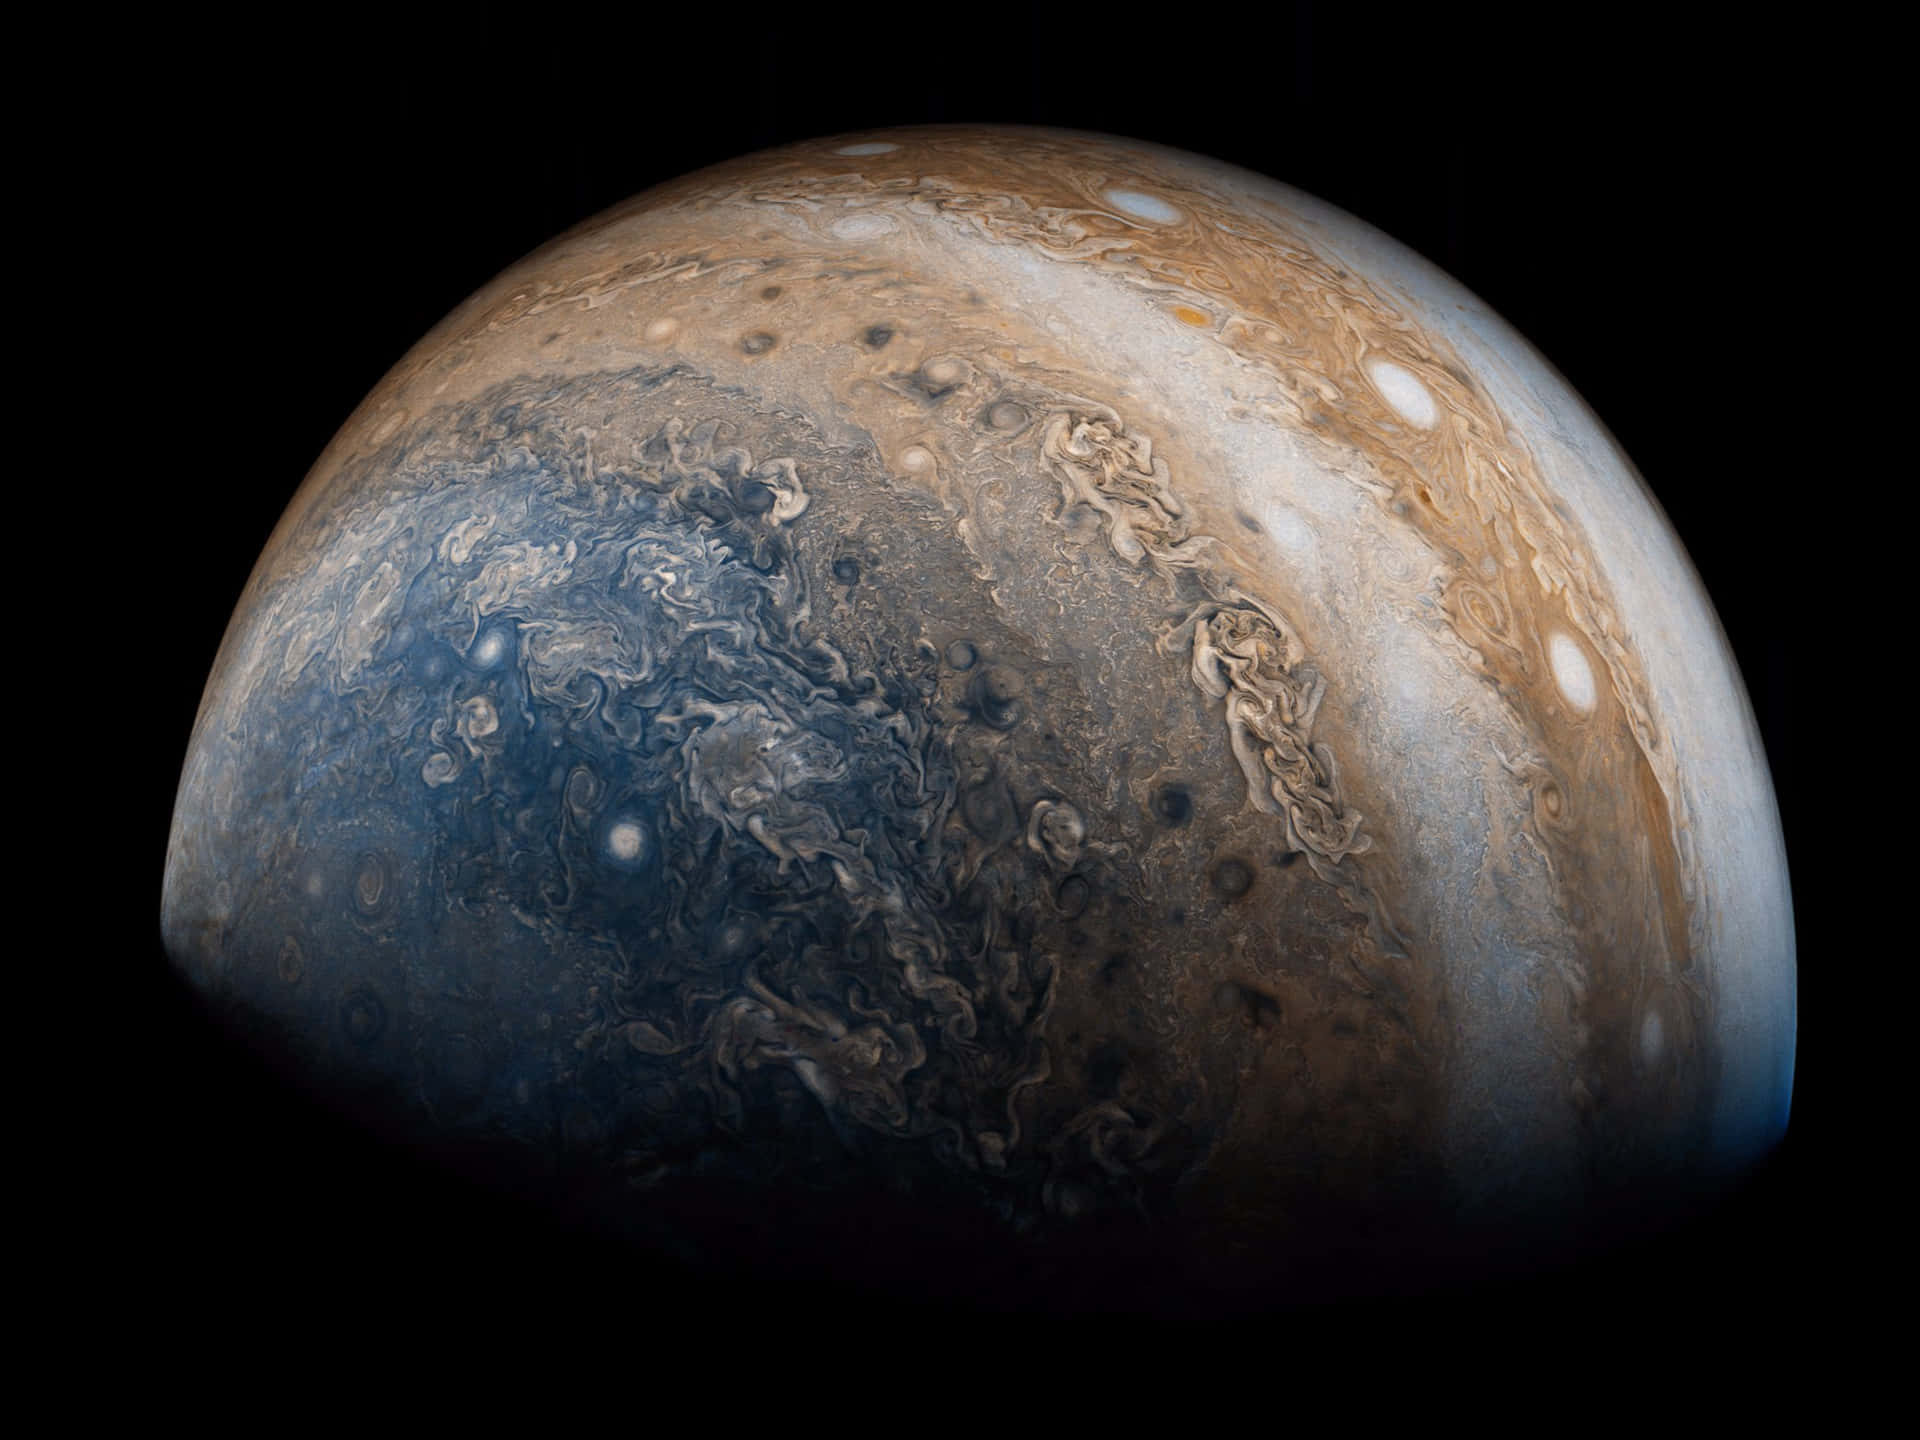 Eksotiskog Majestætisk Jupiter, Solsystemets Konge.